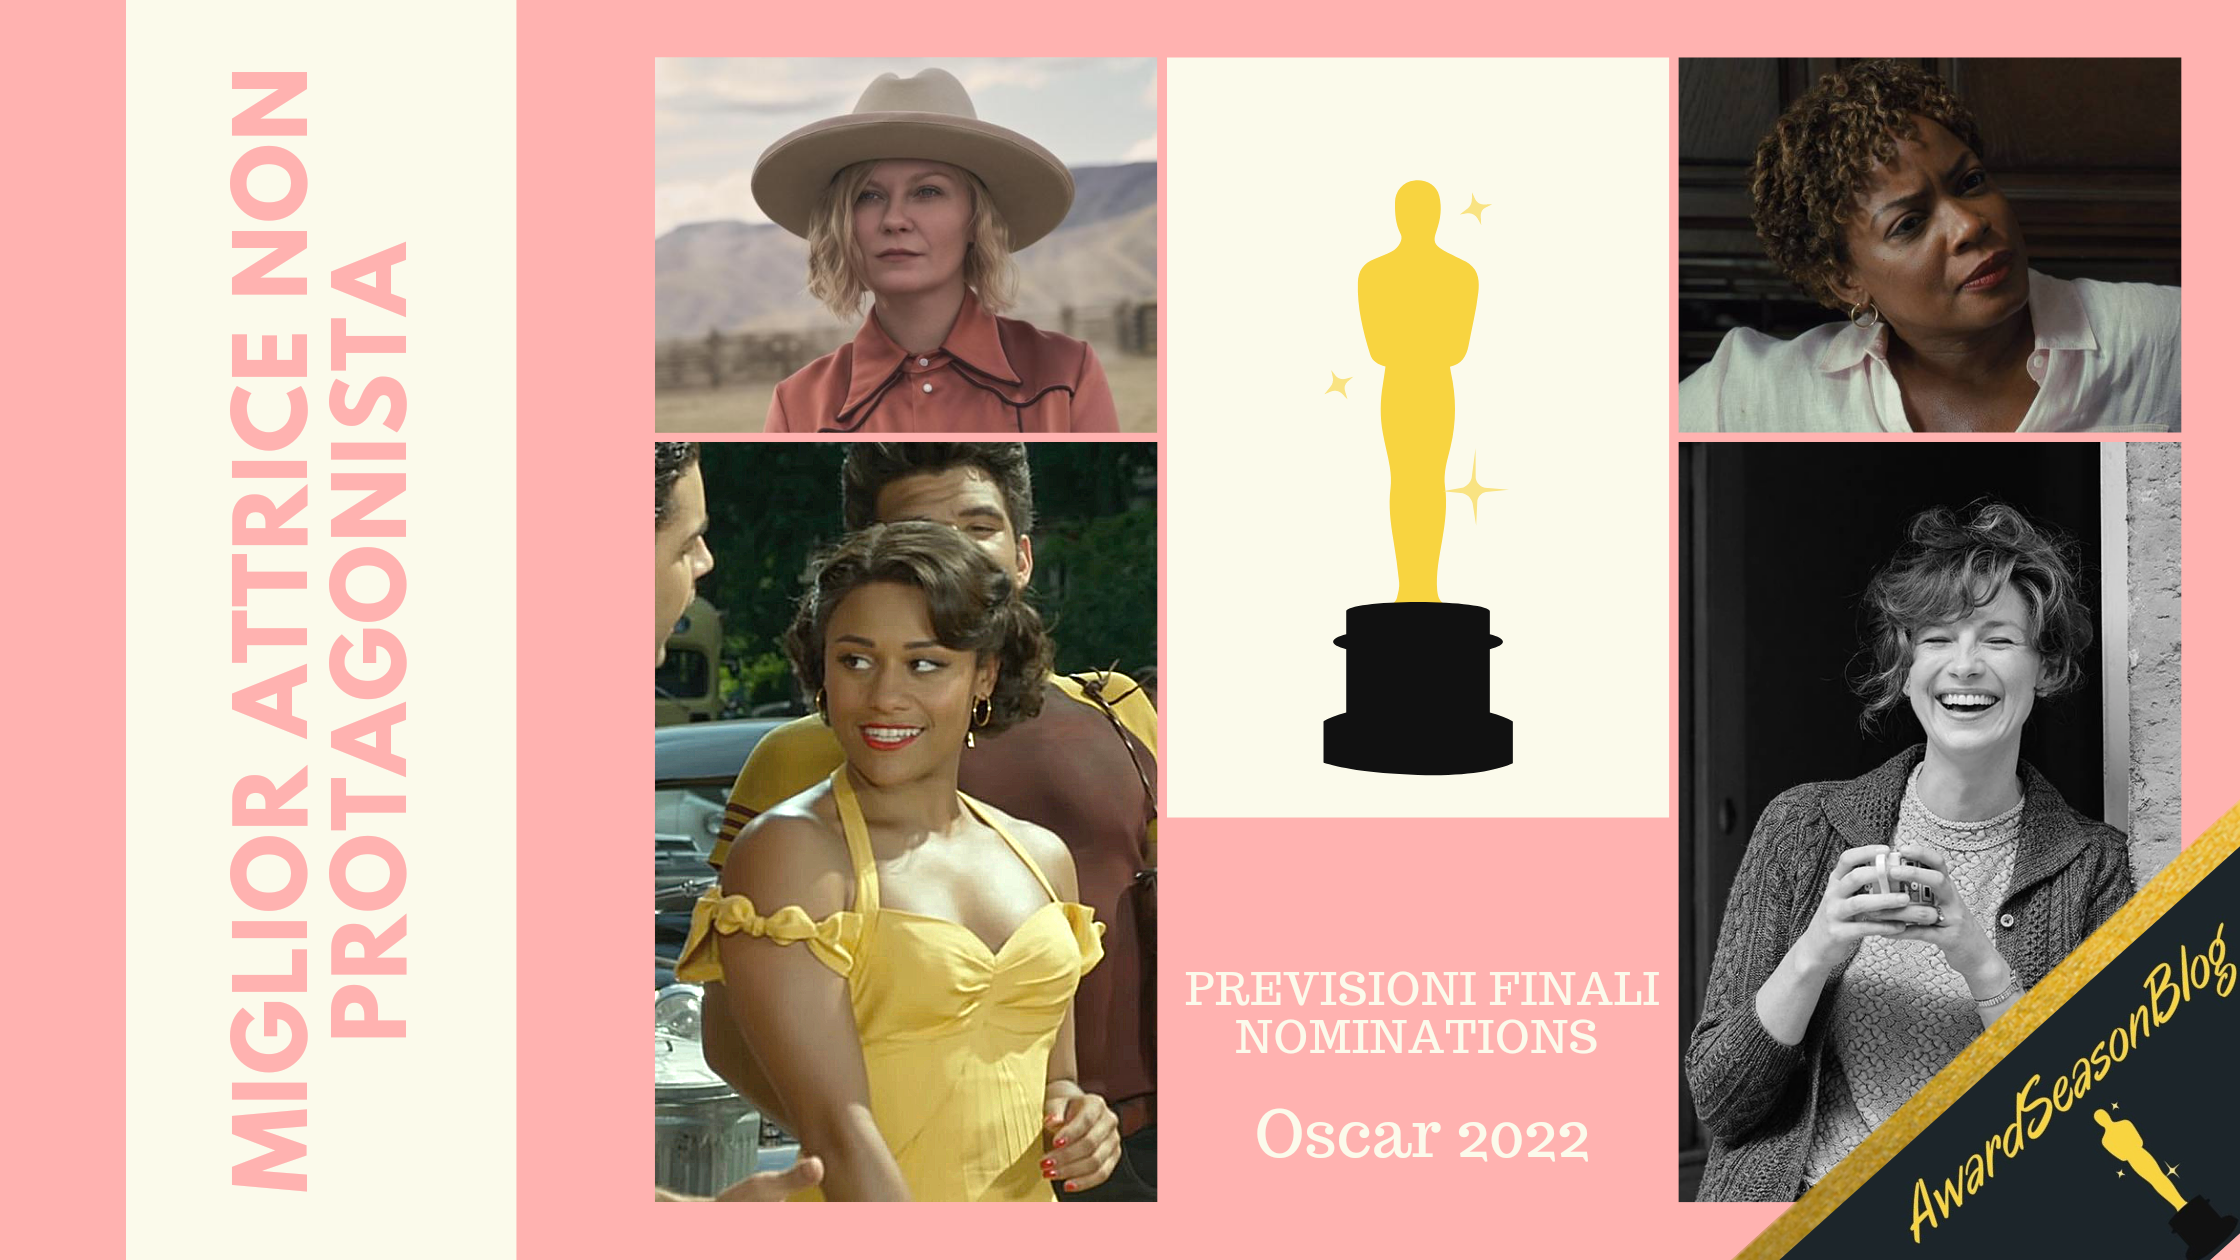 Oscar 2022: quali attrici non protagoniste sono favorite per la nomination? (previsioni febbraio)